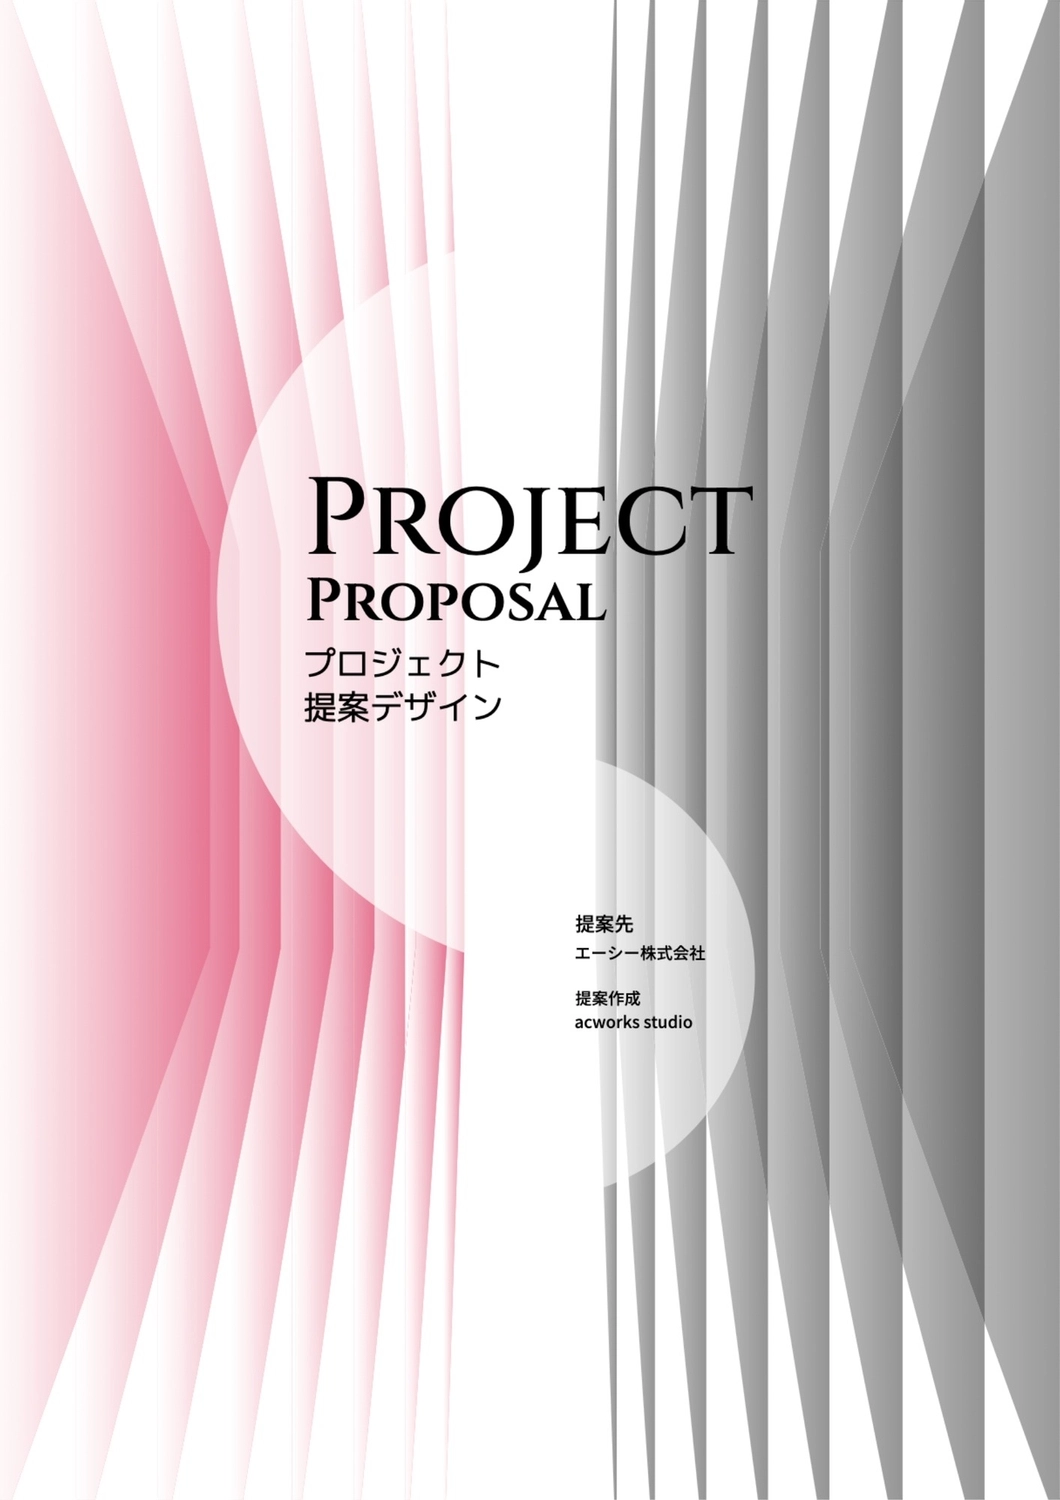 プロジェクト提案デザイン, pink, create, design, A4 template